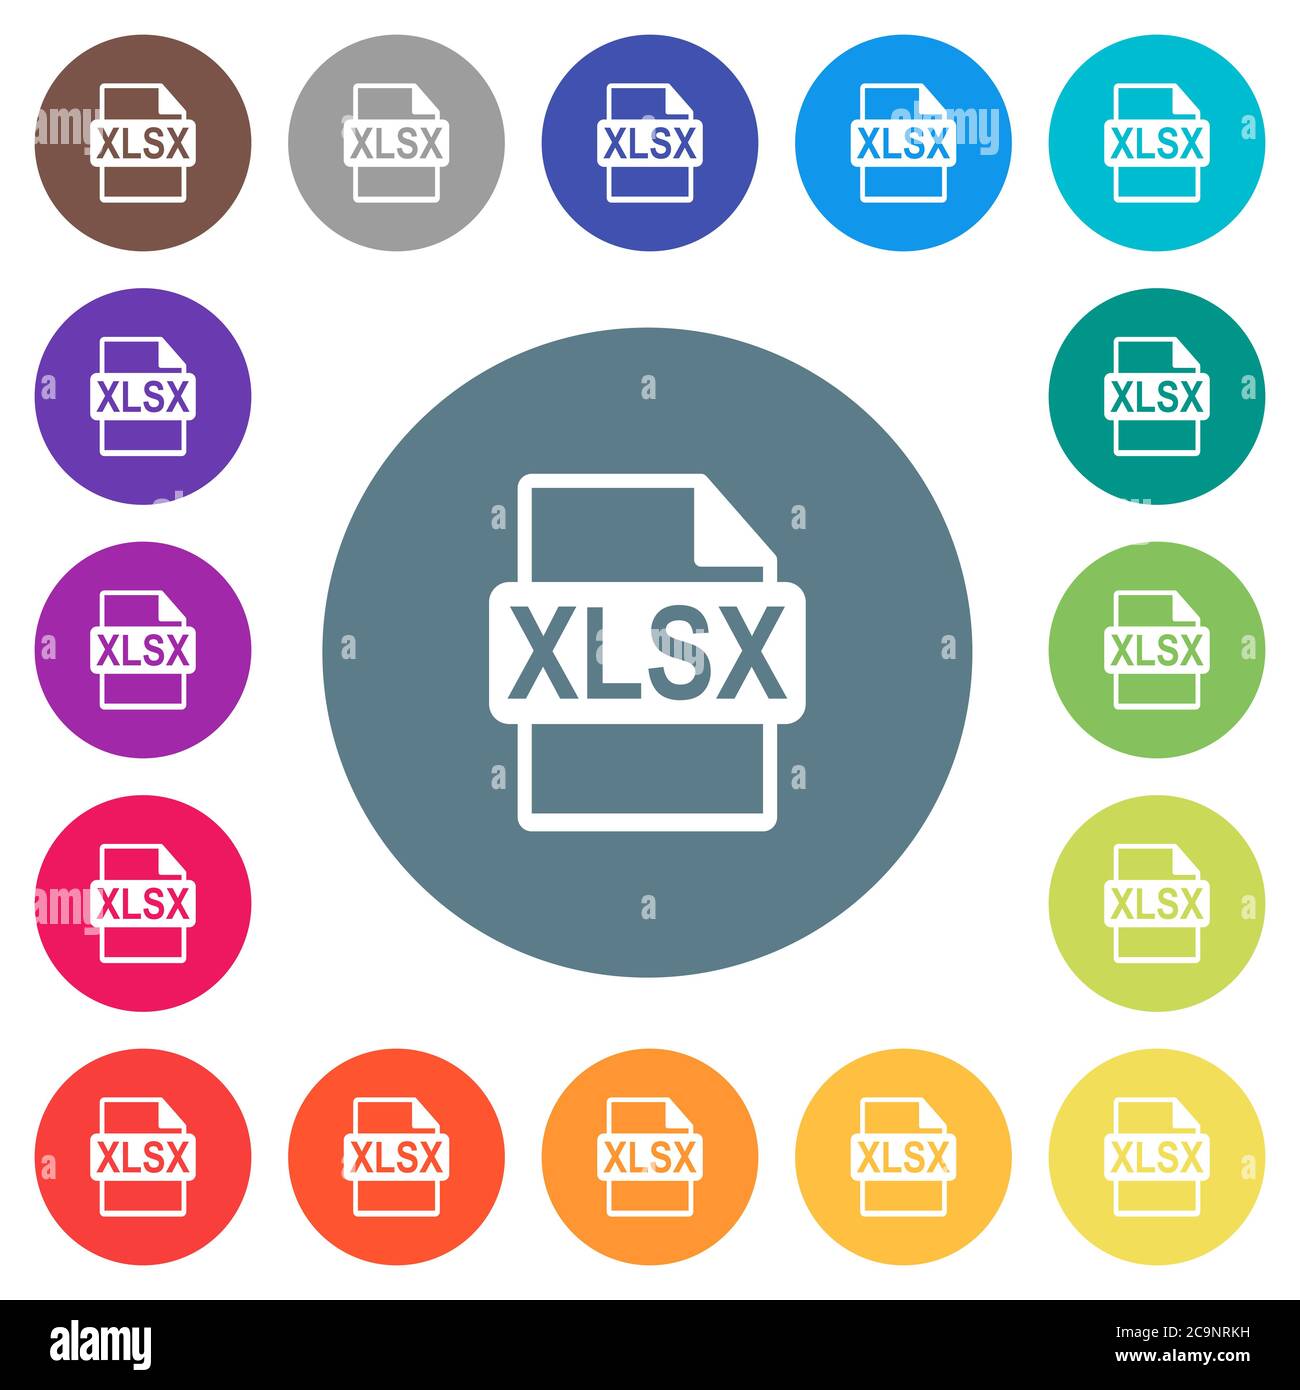 XLSX-Dateiformat flache weiße Symbole auf runden Farbhintergründen. 17 Hintergrundfarbvarianten sind enthalten. Stock Vektor